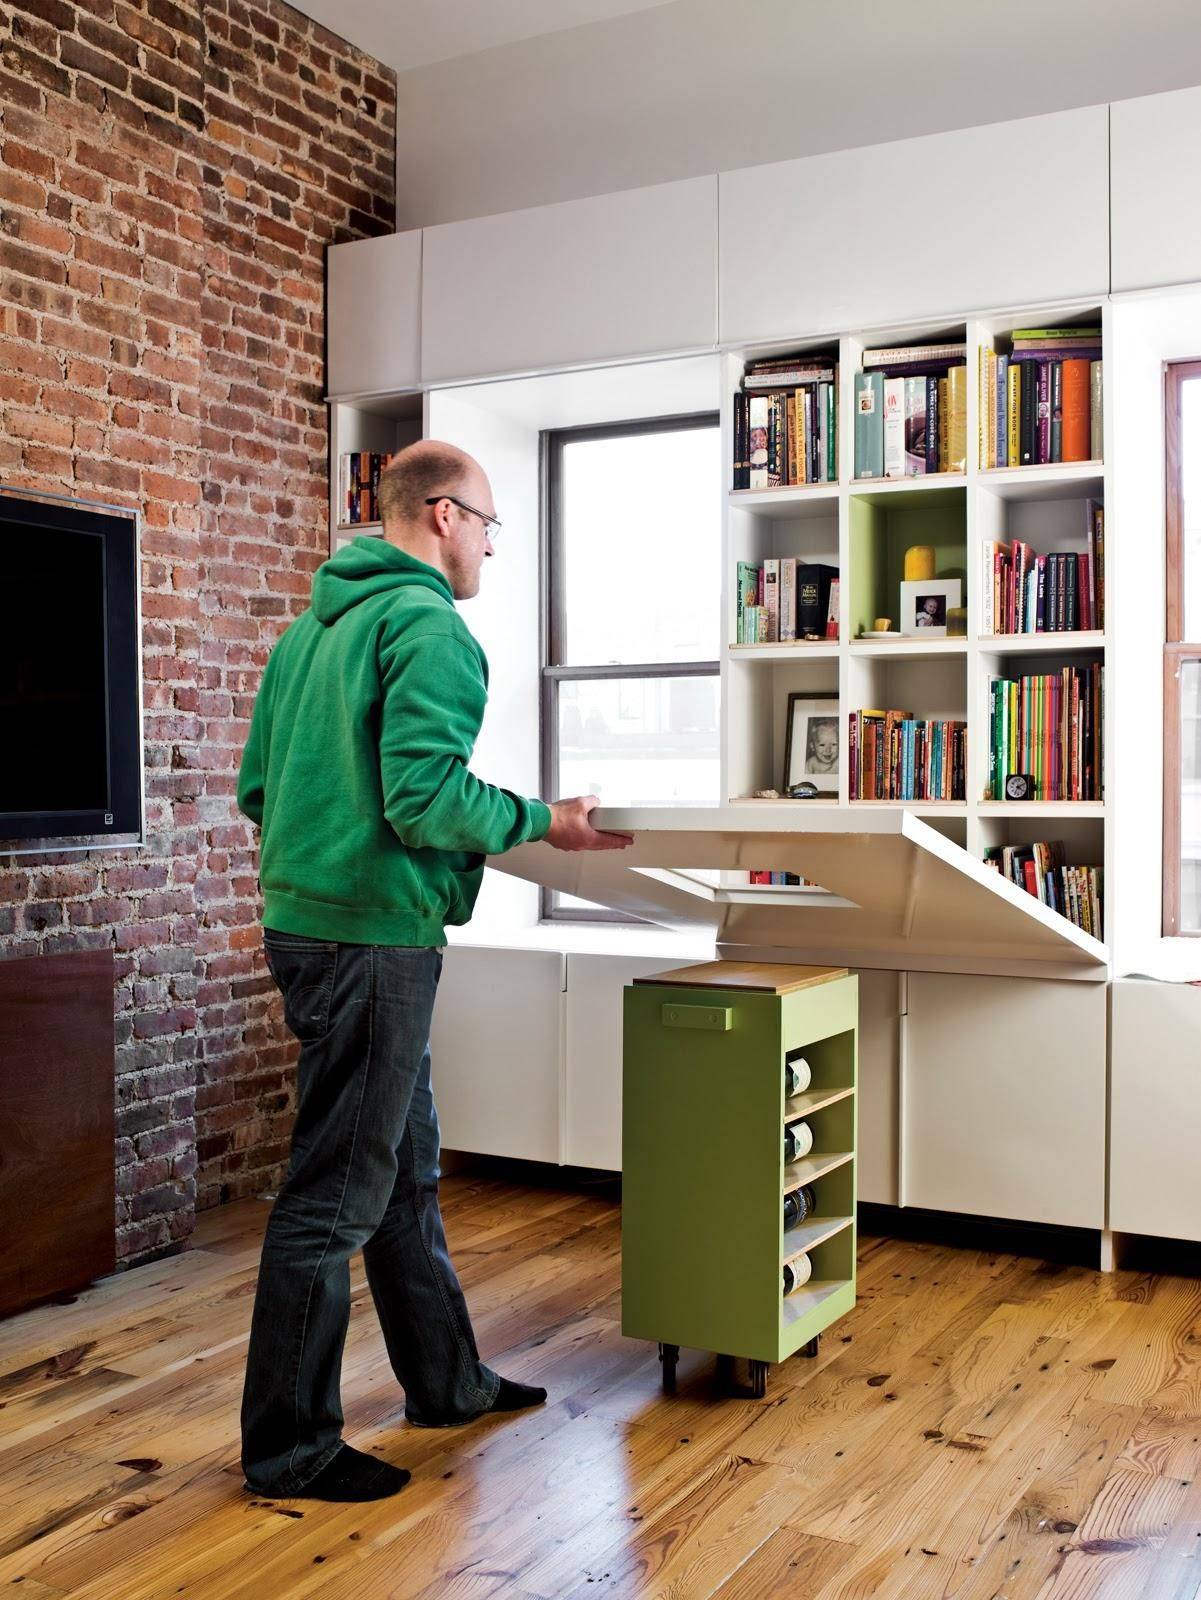 Оптимизация пространства в квартире – лучшие предметы мебели